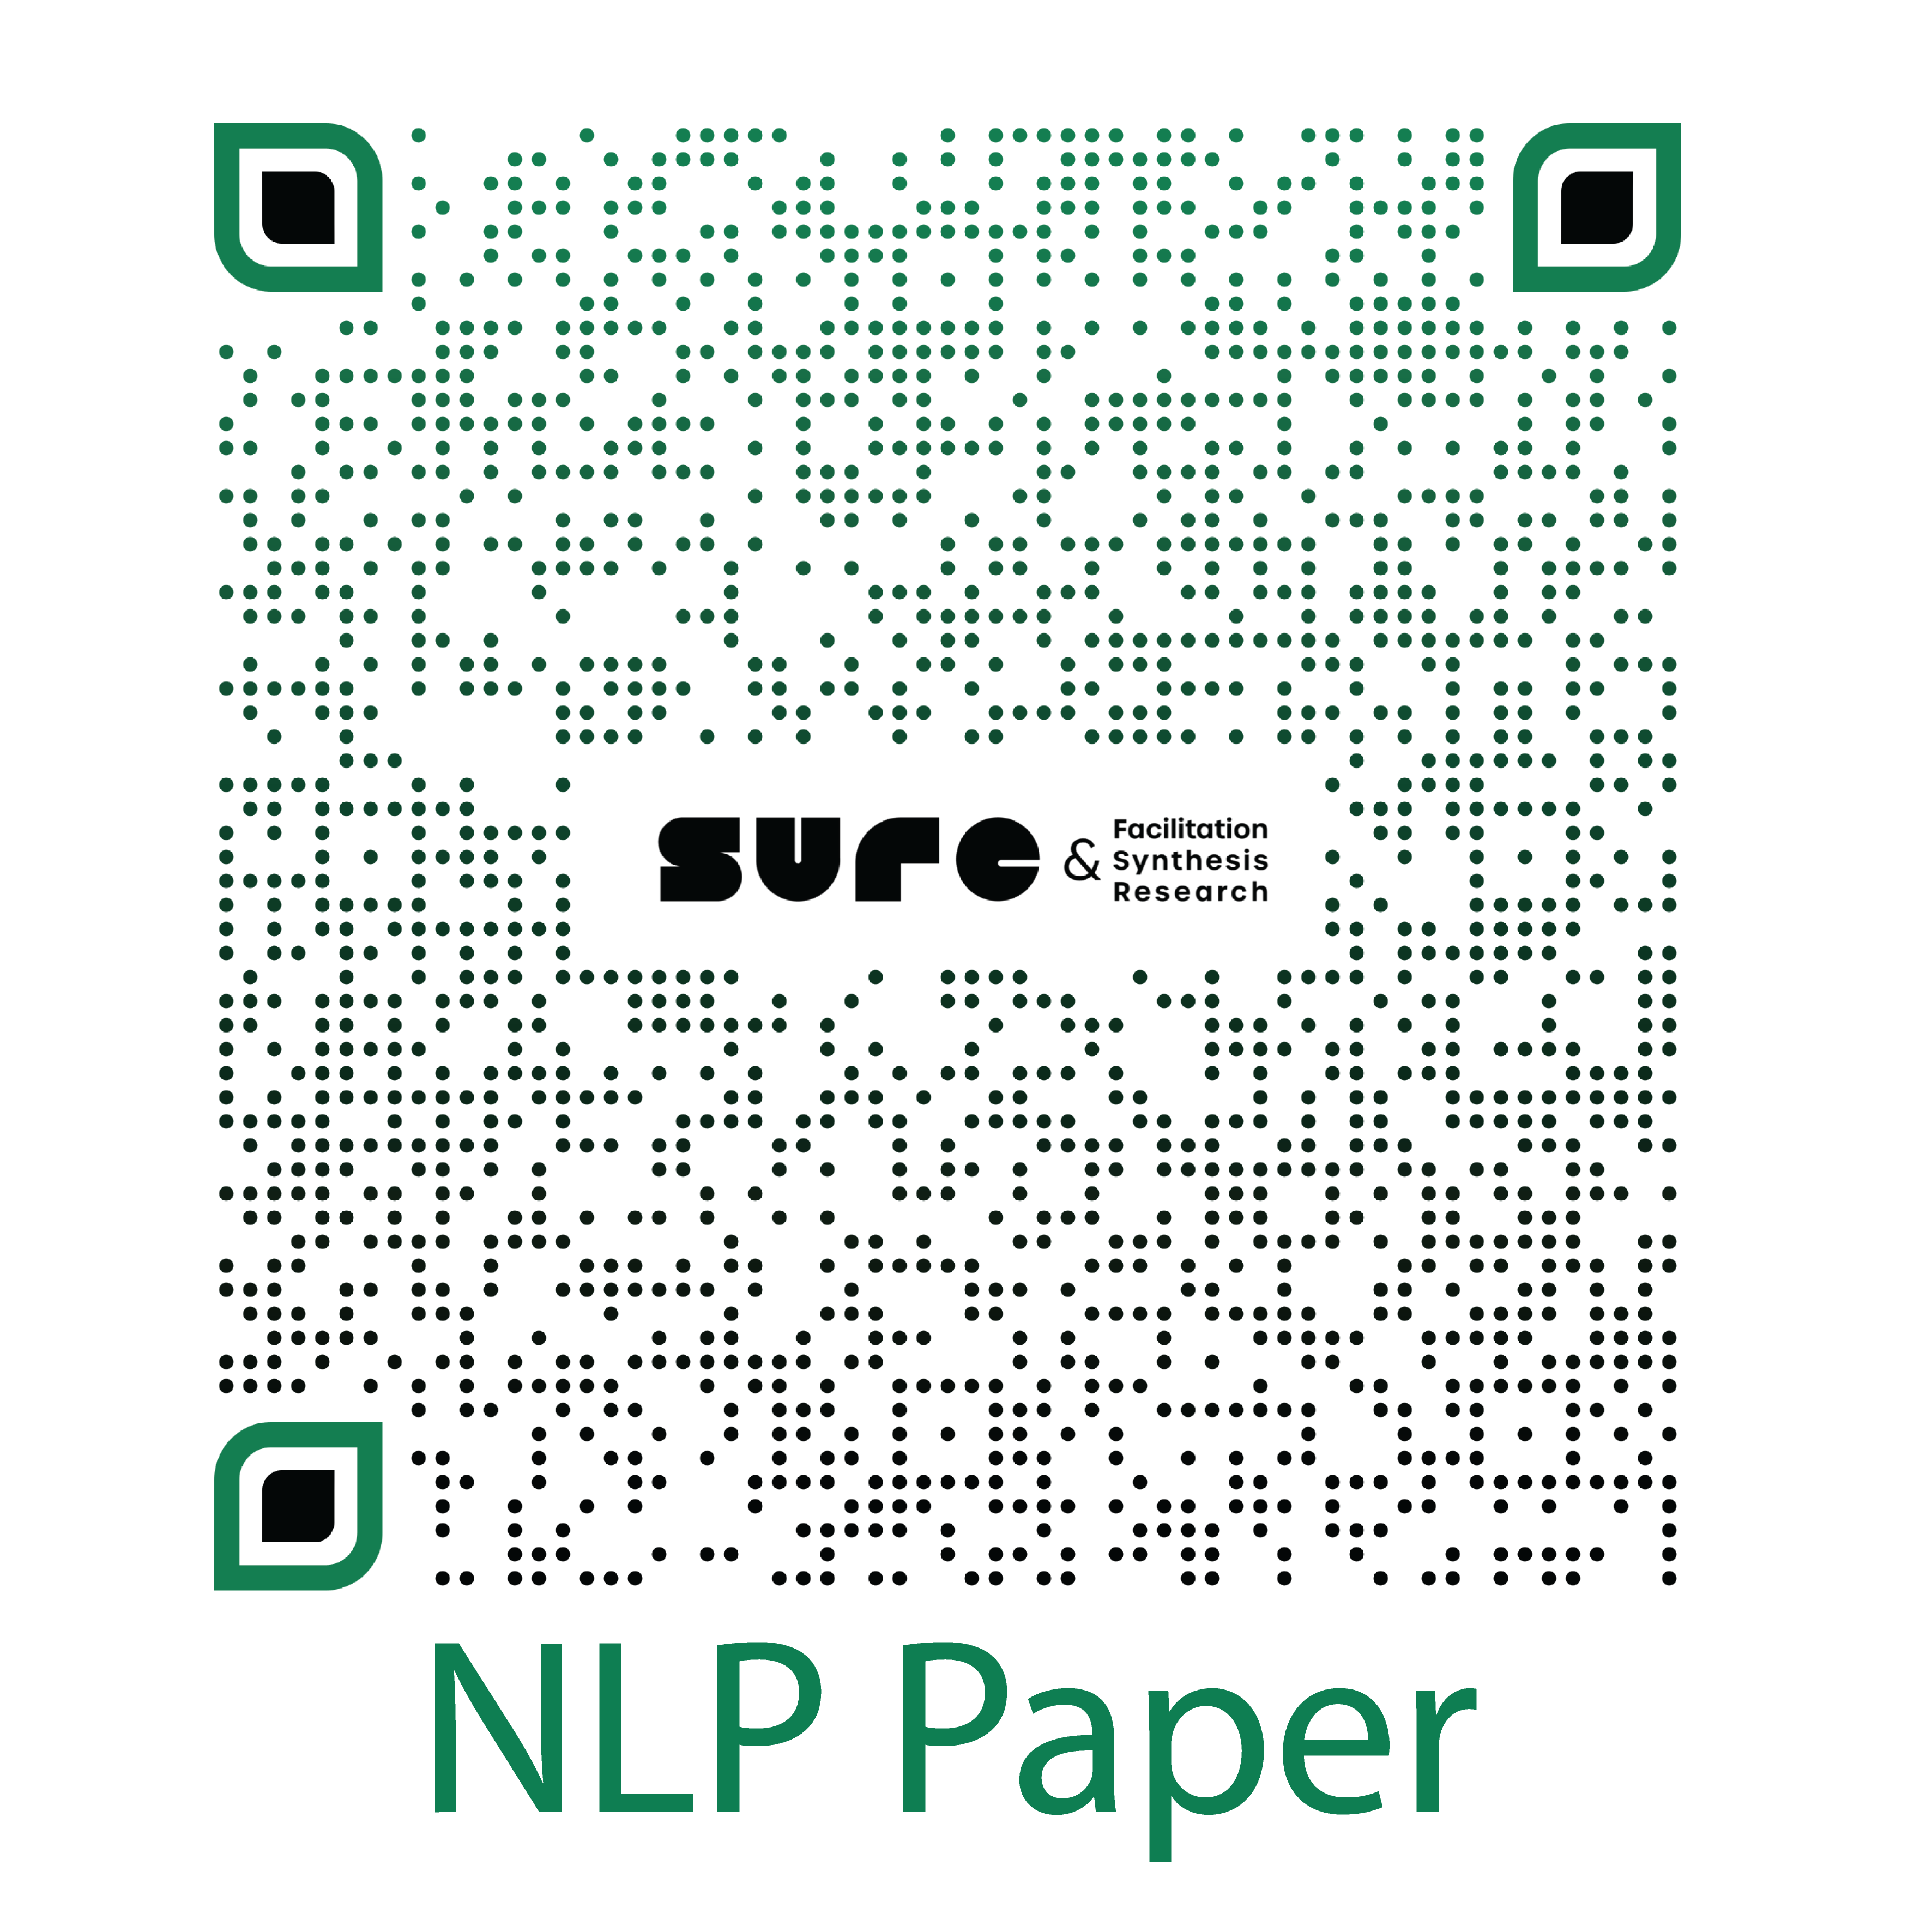 NLP_Paper